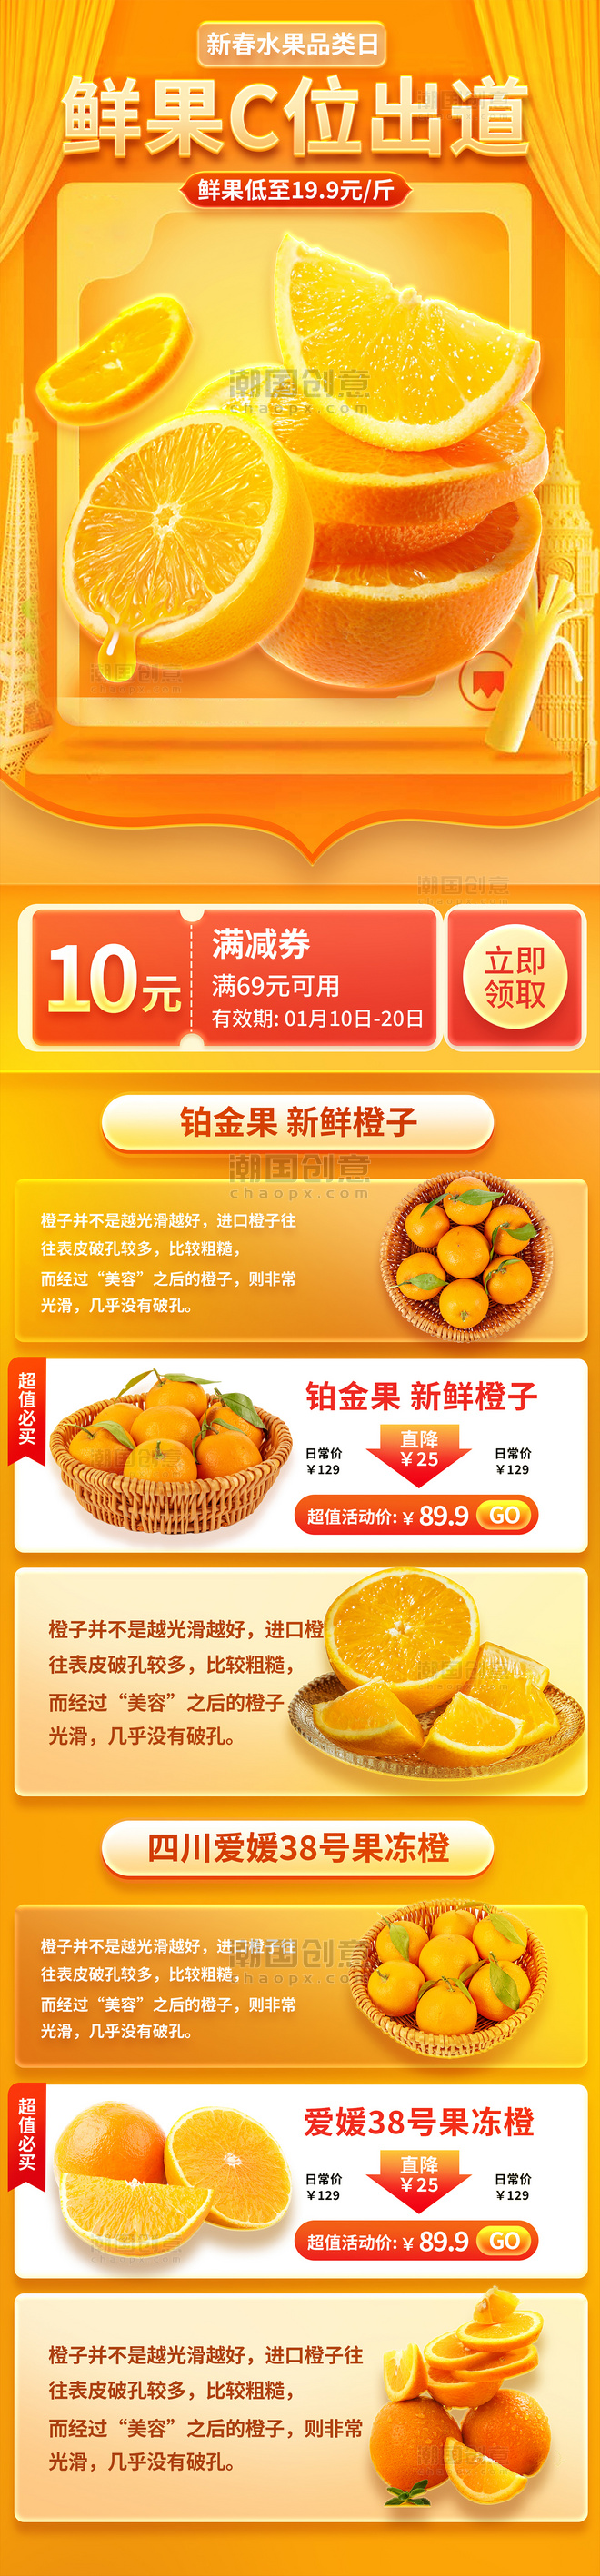 鲜果橙子脐橙水果生鲜电商促销营销长图